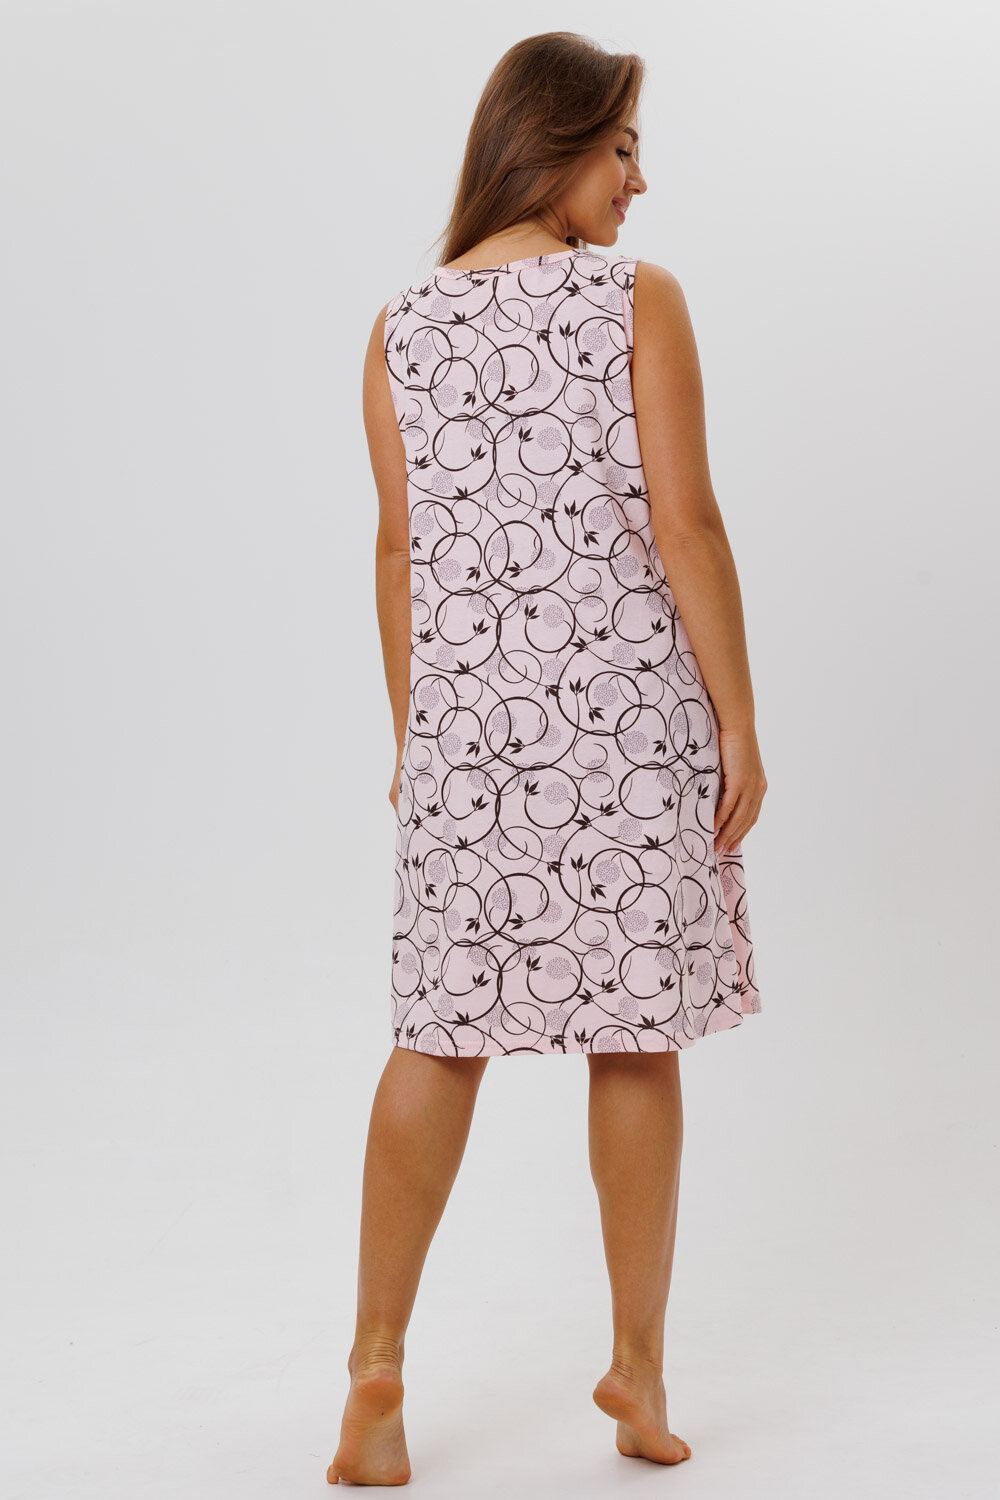 Сорочка Modellini средней длины, без рукава, размер 54, розовый - фотография № 9